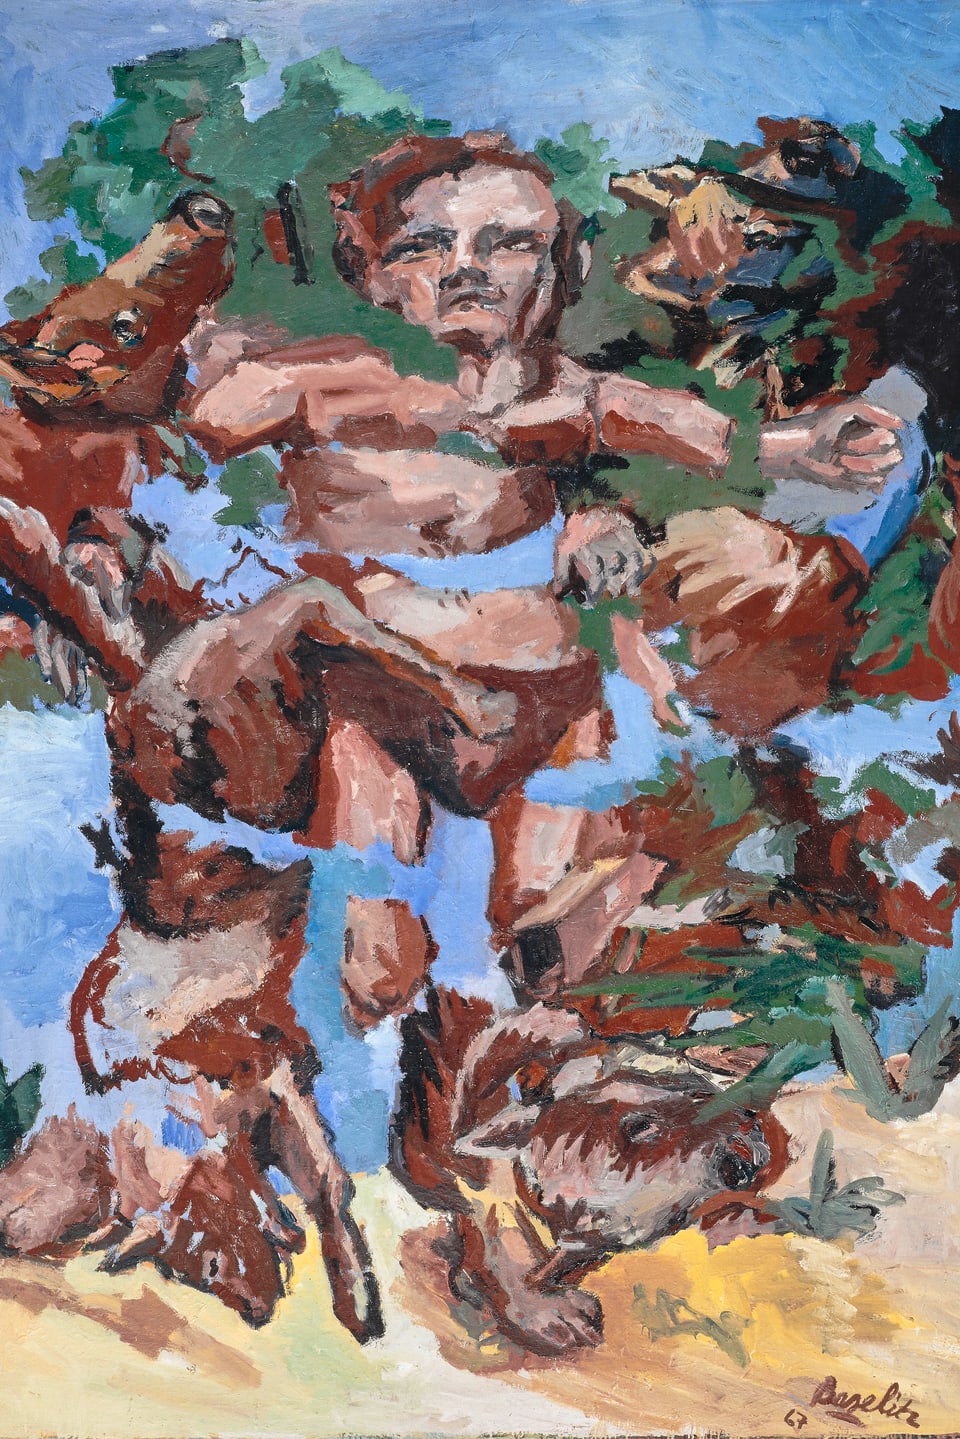 Ein Gemälde von Baselitz. Es zeigt einen Mann, der in Stücke gerissen wurde.